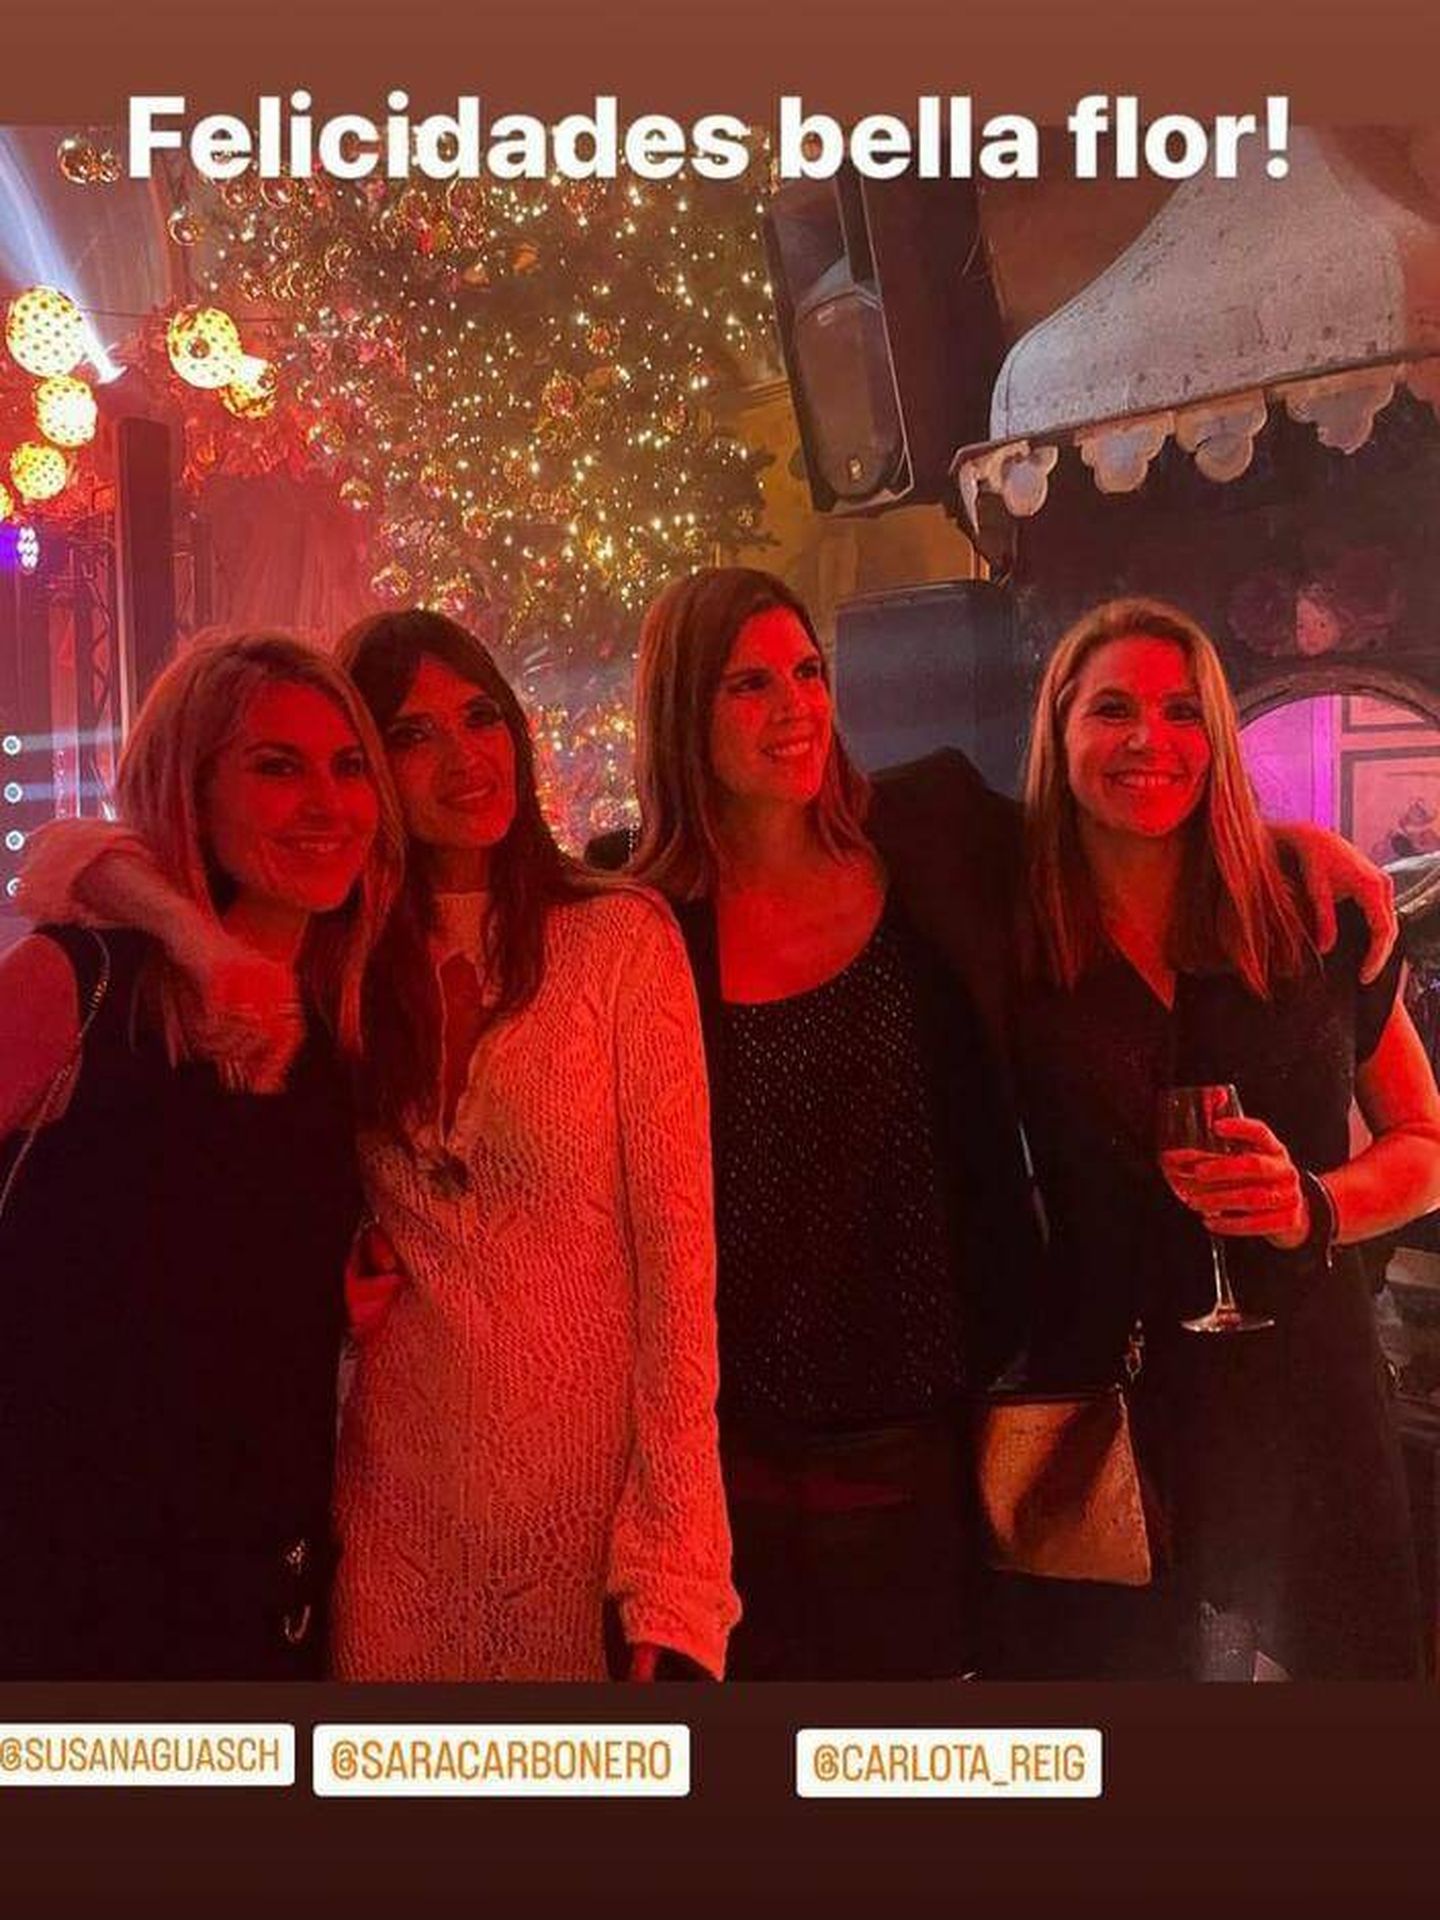 Sara disfruta del cumpleaños con algunas amigas como Susana Guasch, entre otras. (Instagram/@saracarbonero)